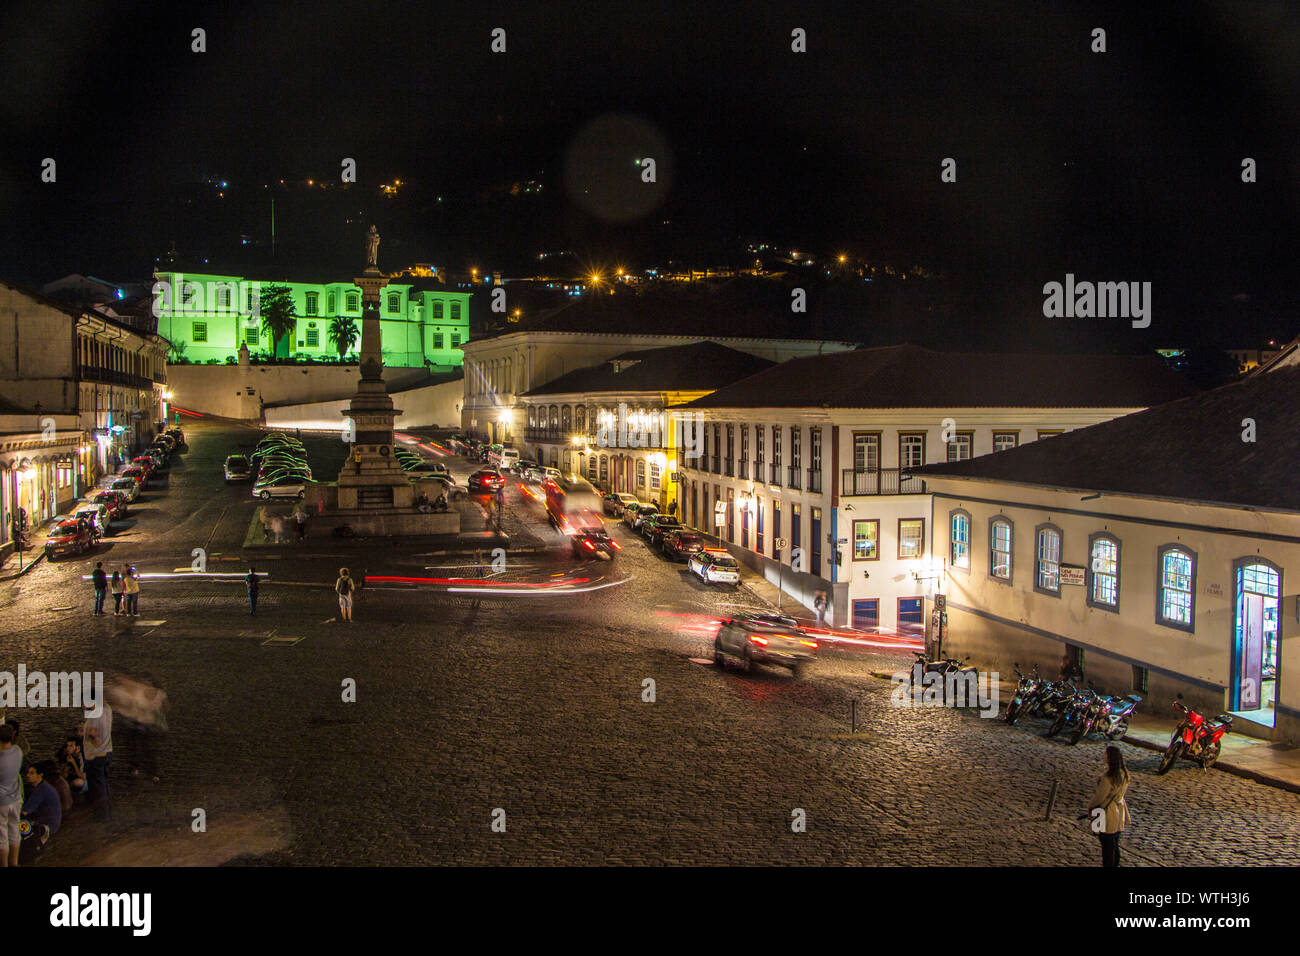 Praça Tiradentes, Night, Square Tiradentes, Ouro Preto, Minas Gerais, Brazil Stock Photo